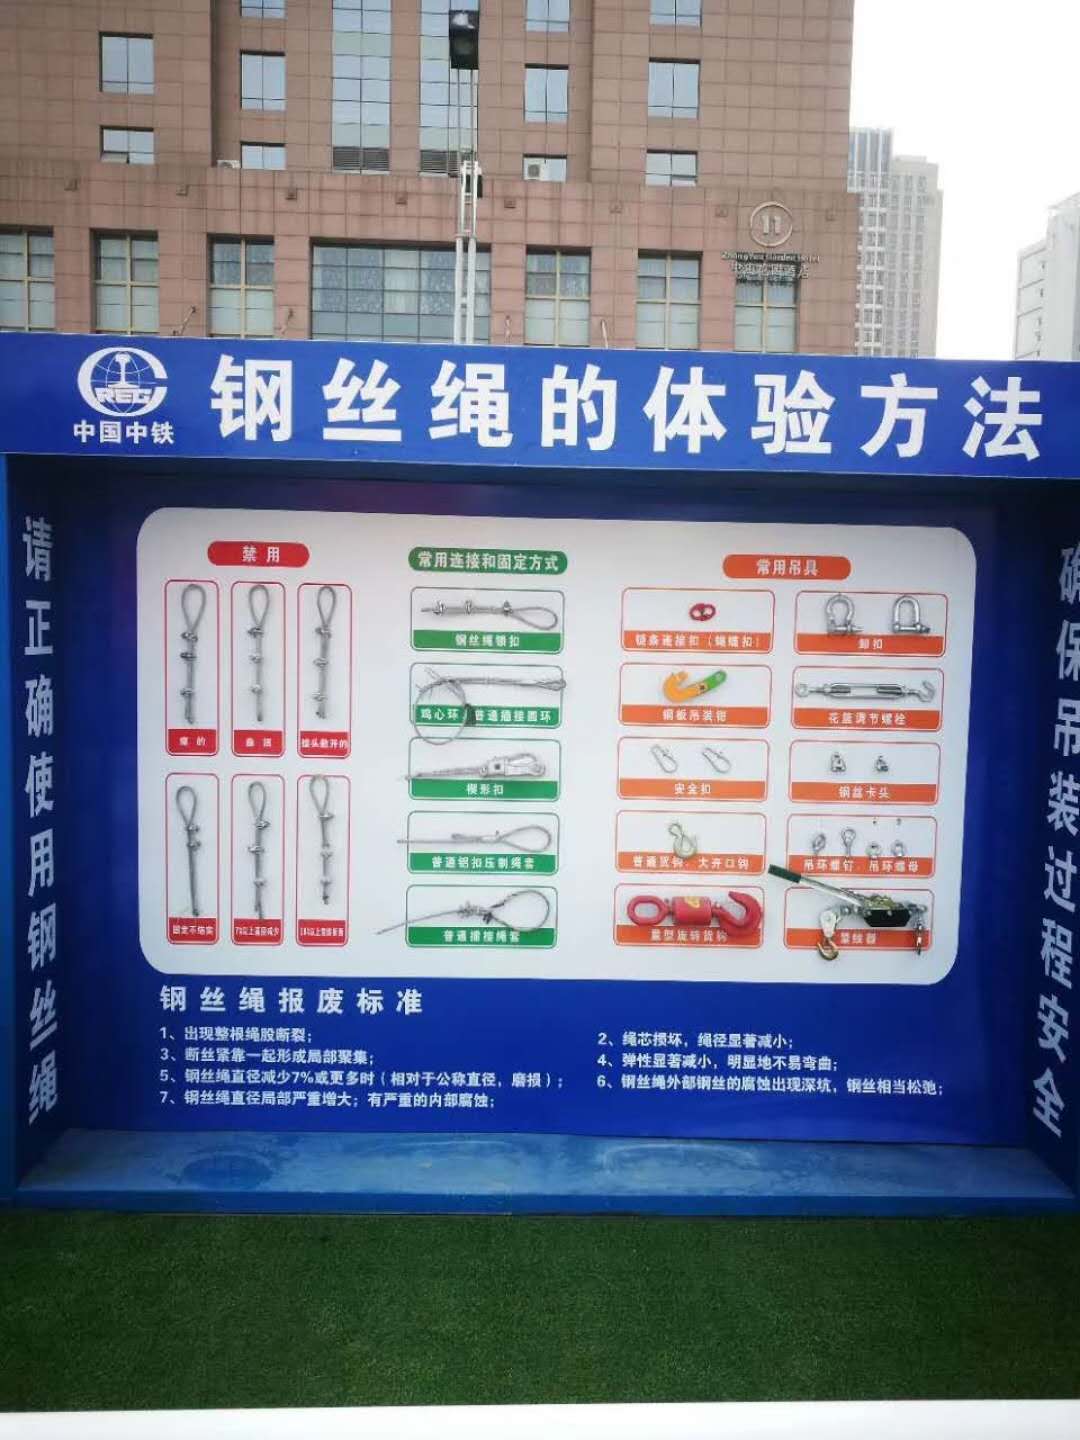 上海居民小区 地下停车场 学校医院中型消防器